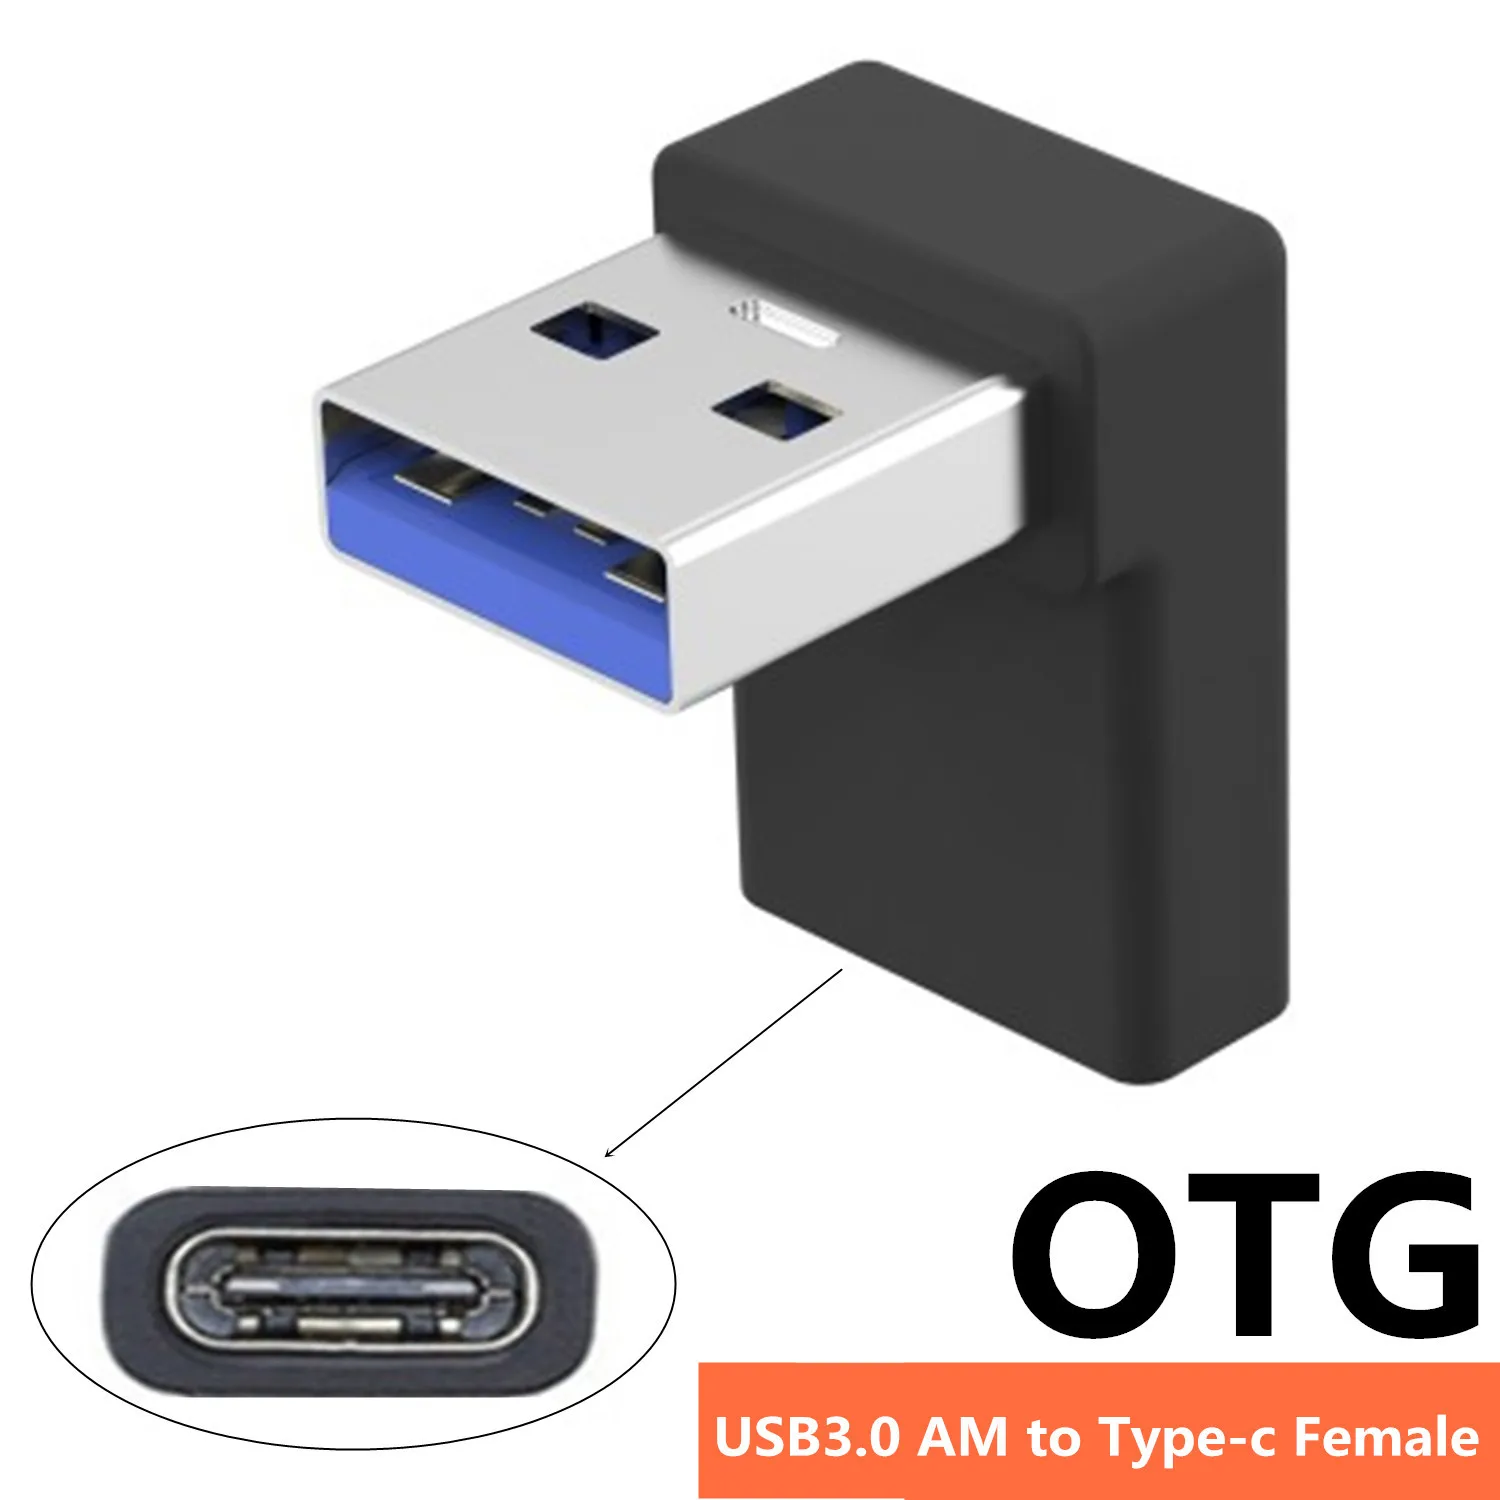 

Адаптер для передачи данных USB 3,0 OTG, Колено 90 °, штекер USB А в гнездо type -c